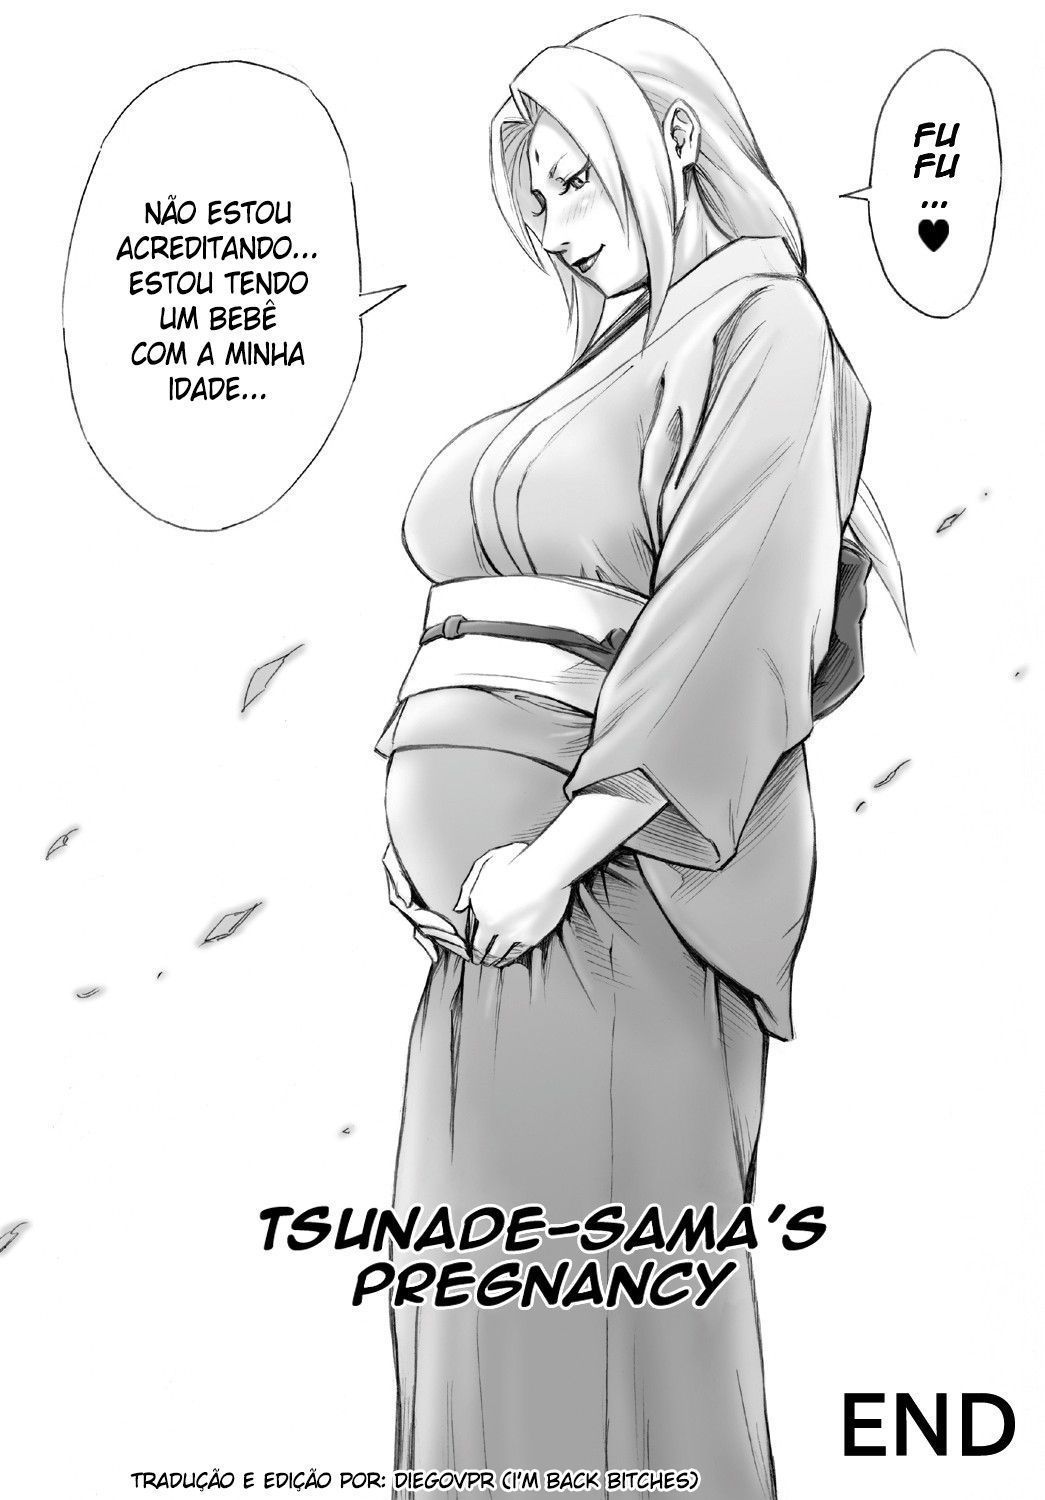 Eu quero um bebê da Tsunade! - Foto 23